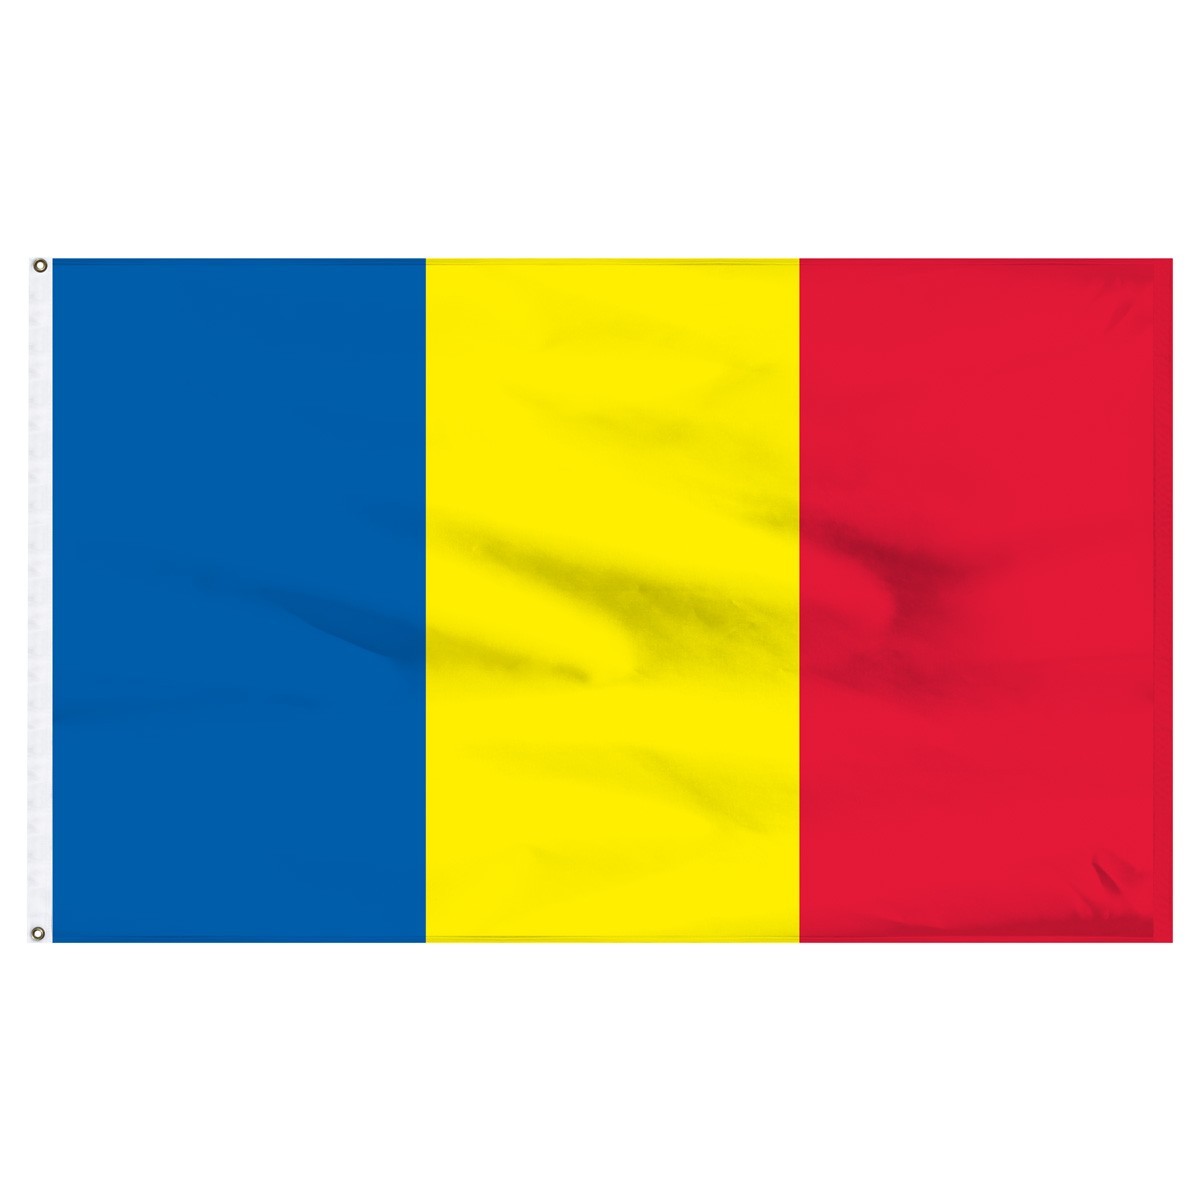 Romania 5' x 8' Outdoor Nylon Flag